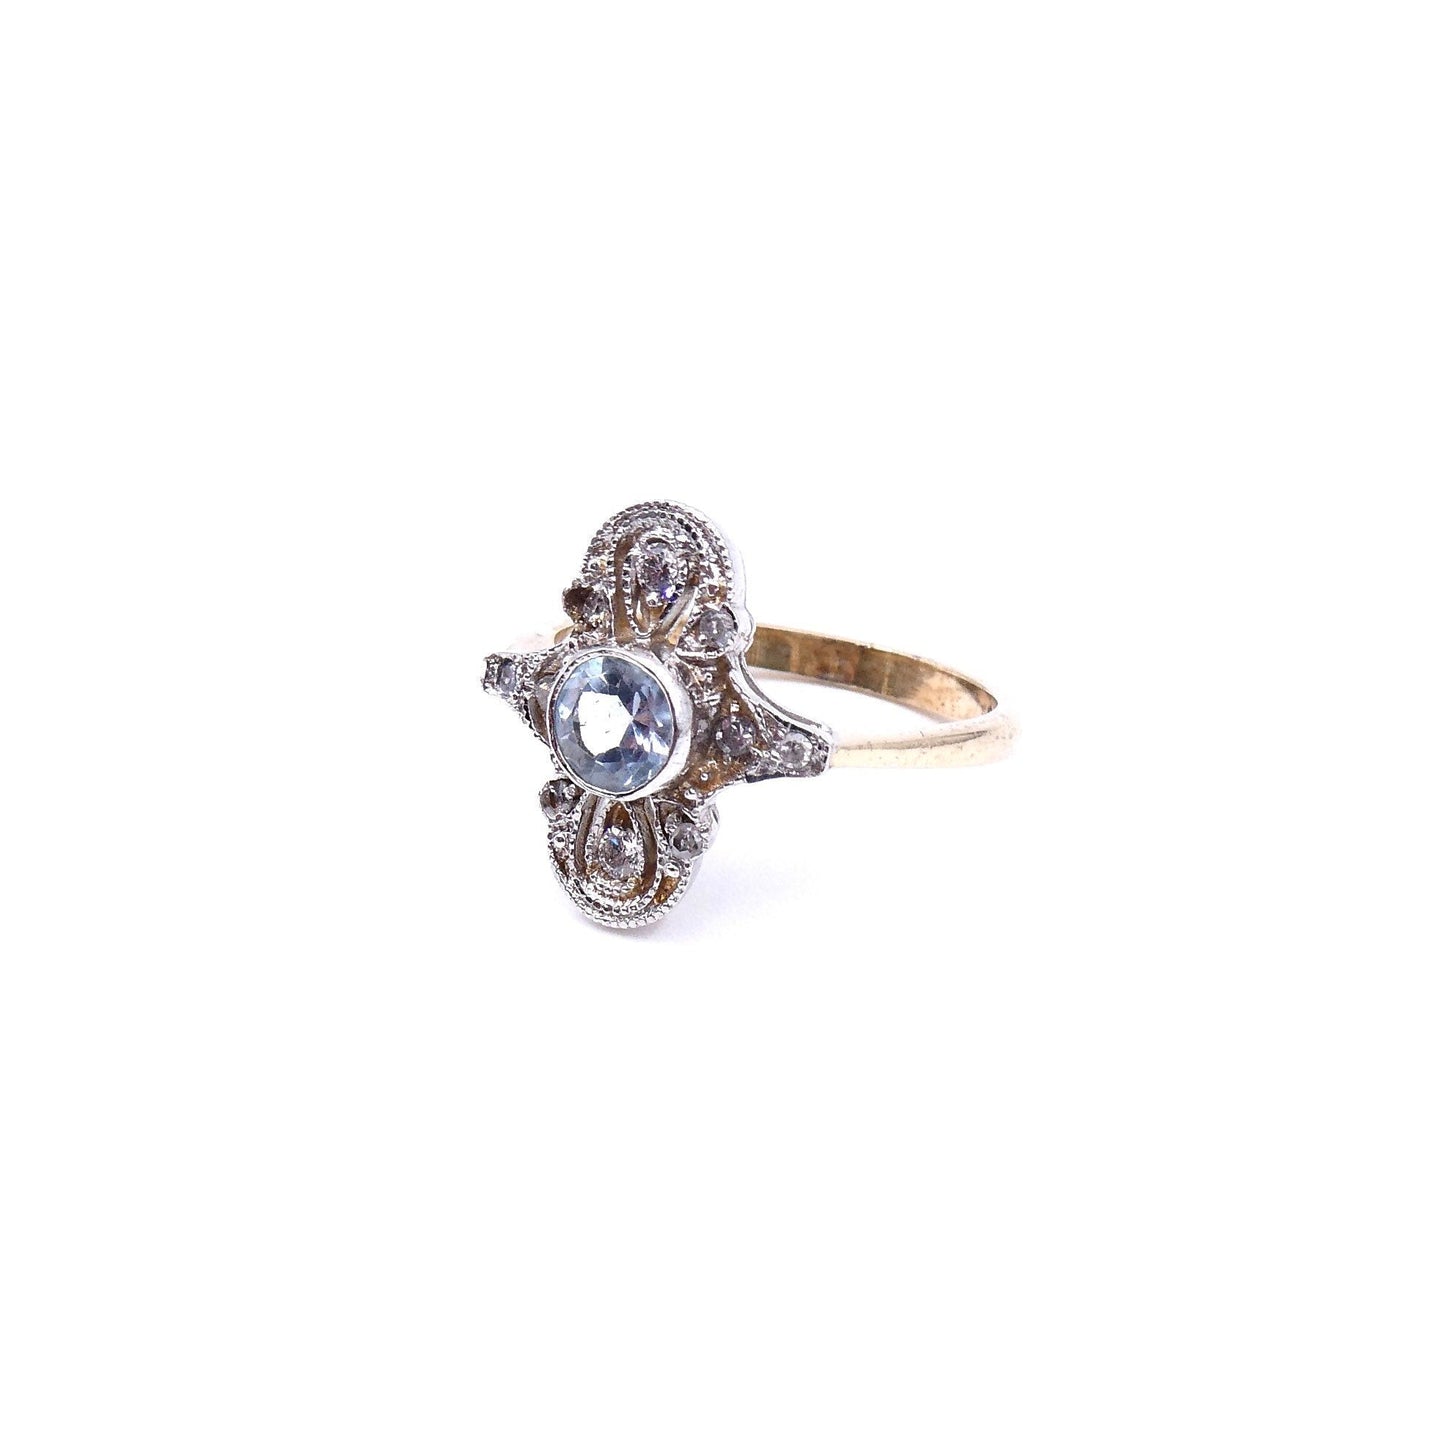 Art Deco style aquamarine ring with diamonds, elegant diamond aquamarine ring. - Collected